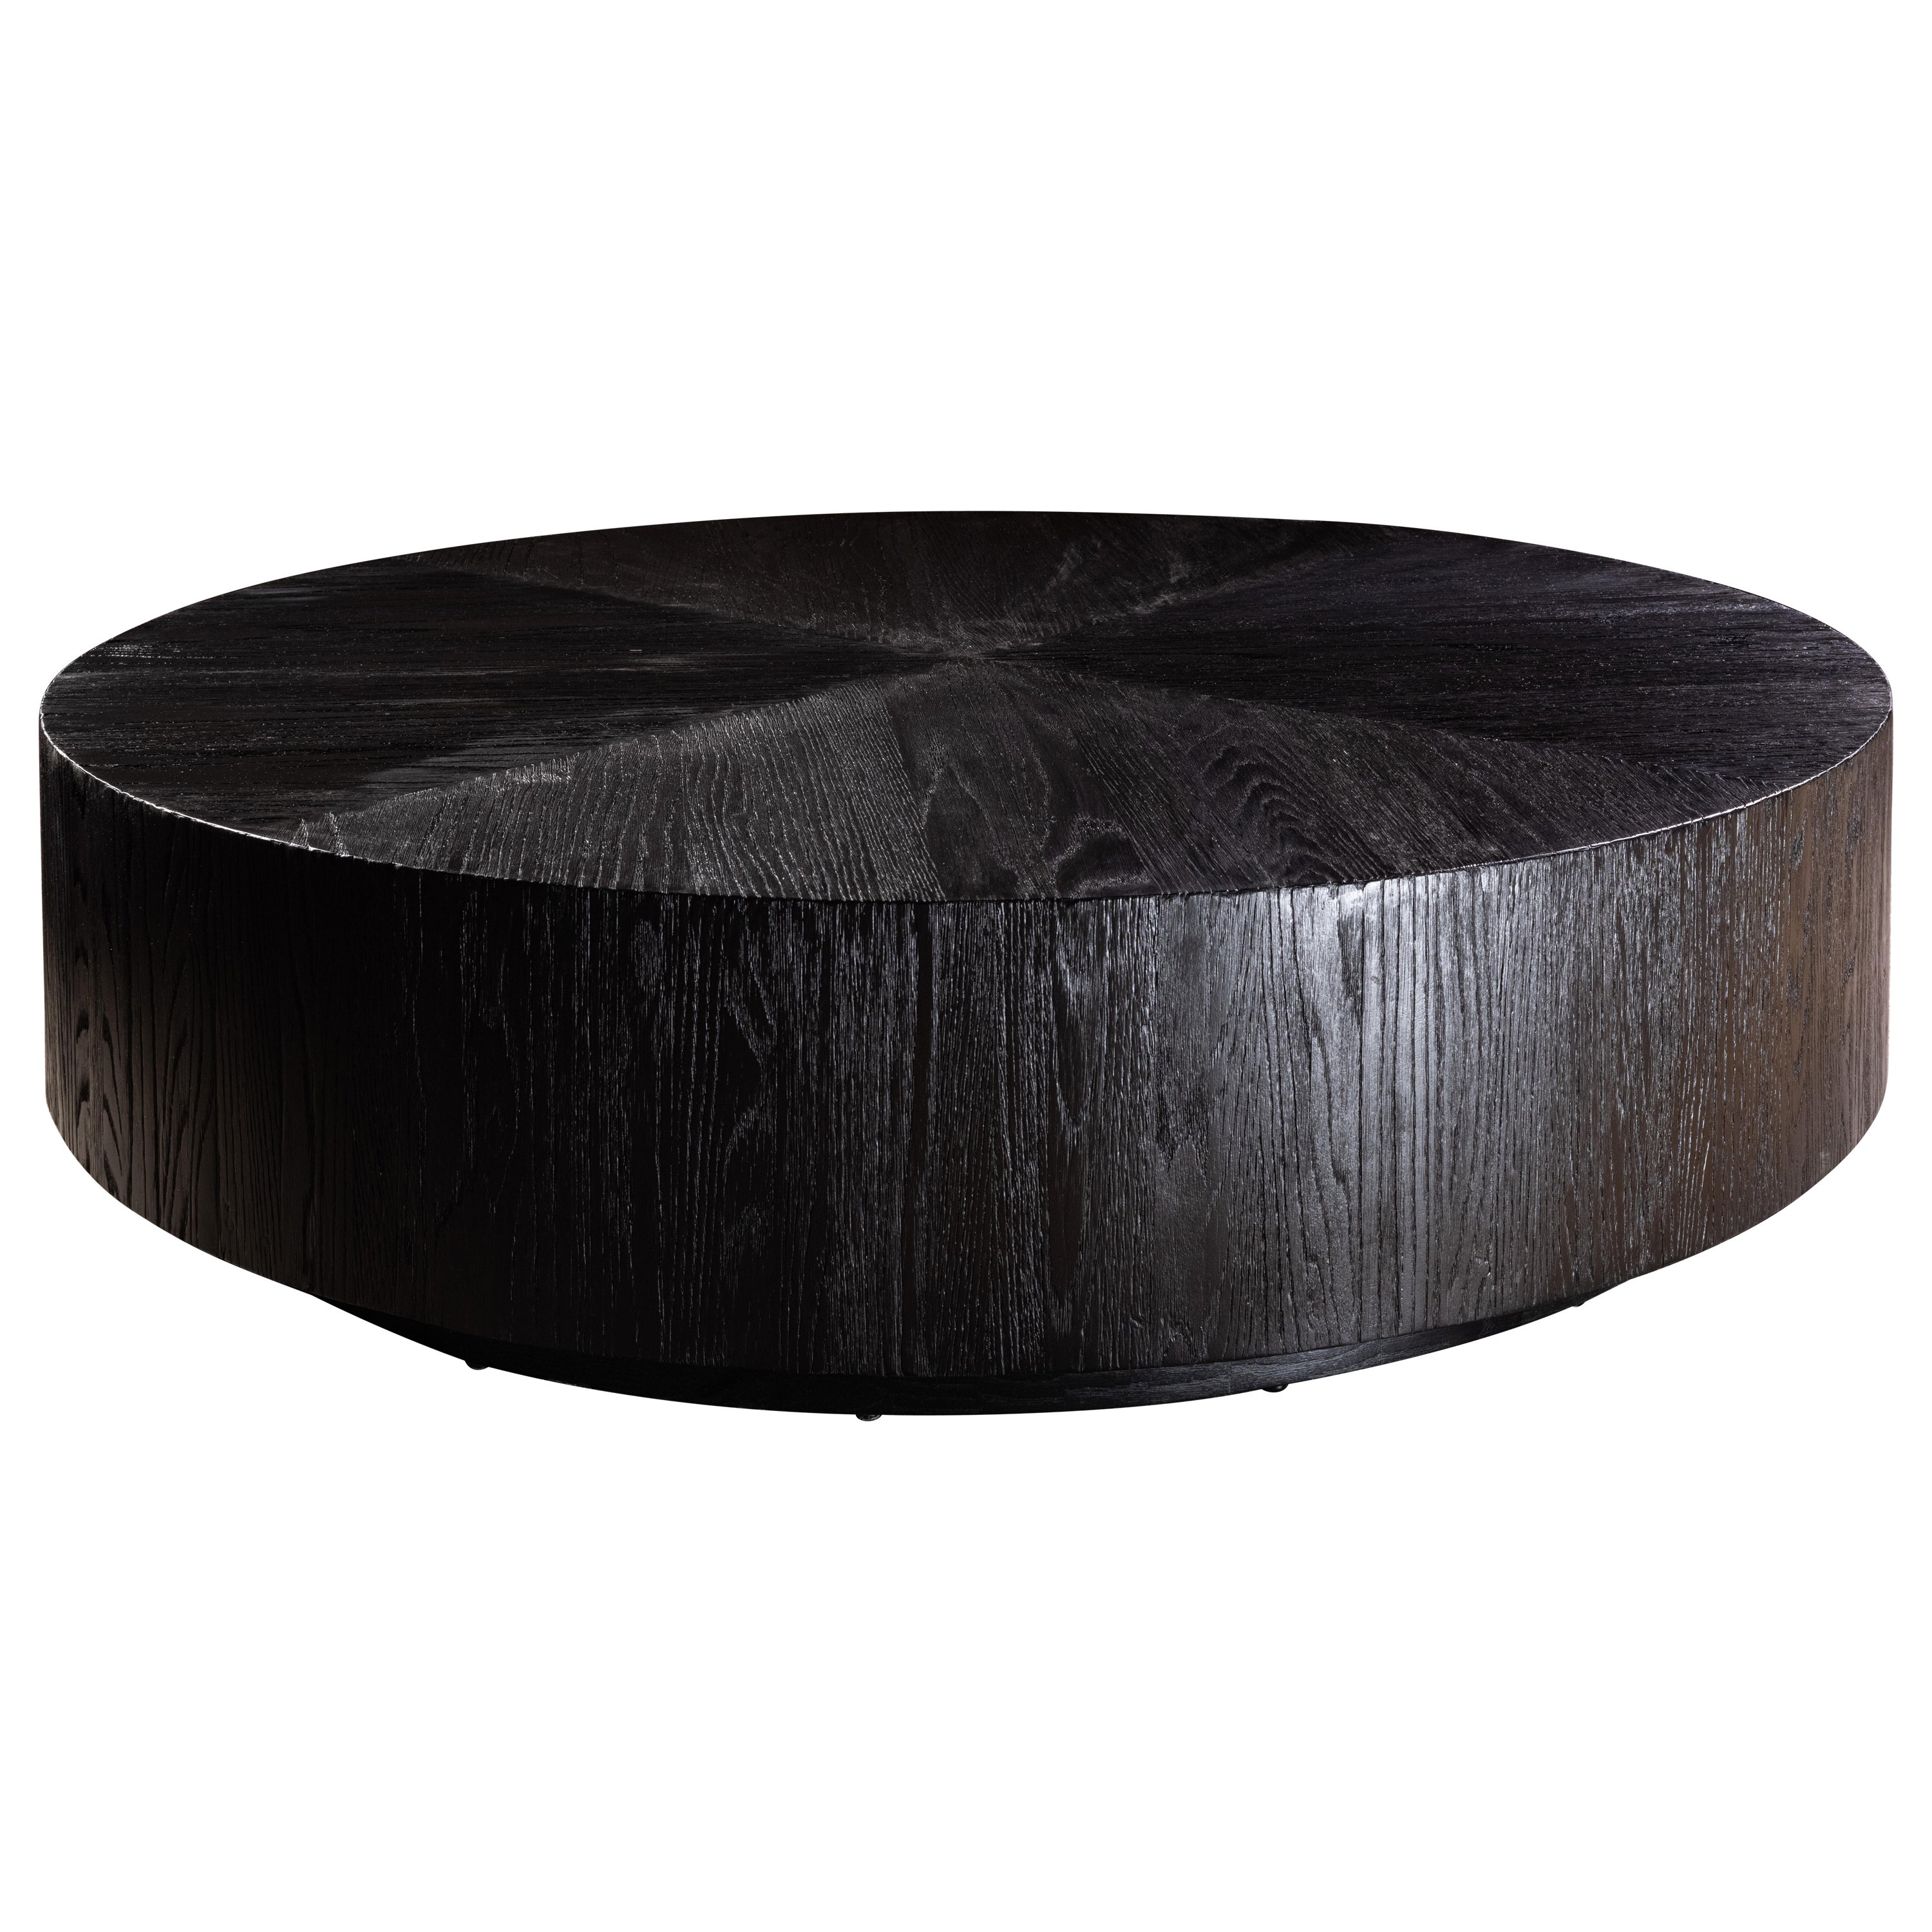 Table basse ronde segmentée en chêne noir